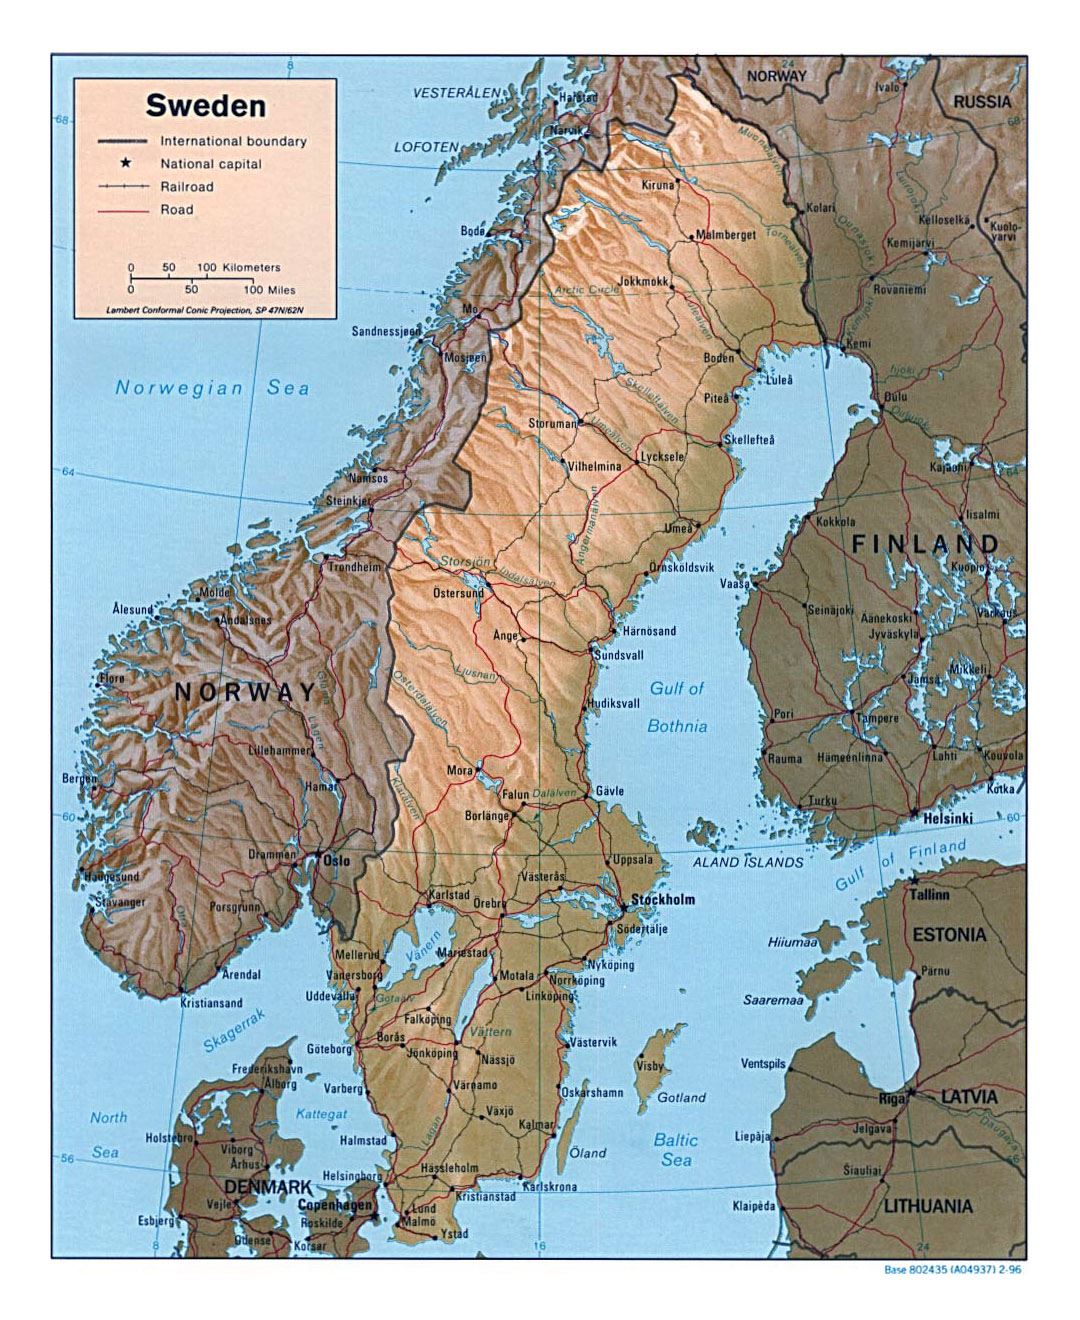 Detallado mapa político de Suecia con relieve, carreteras, ferrocarriles y ciudades principales - 1996